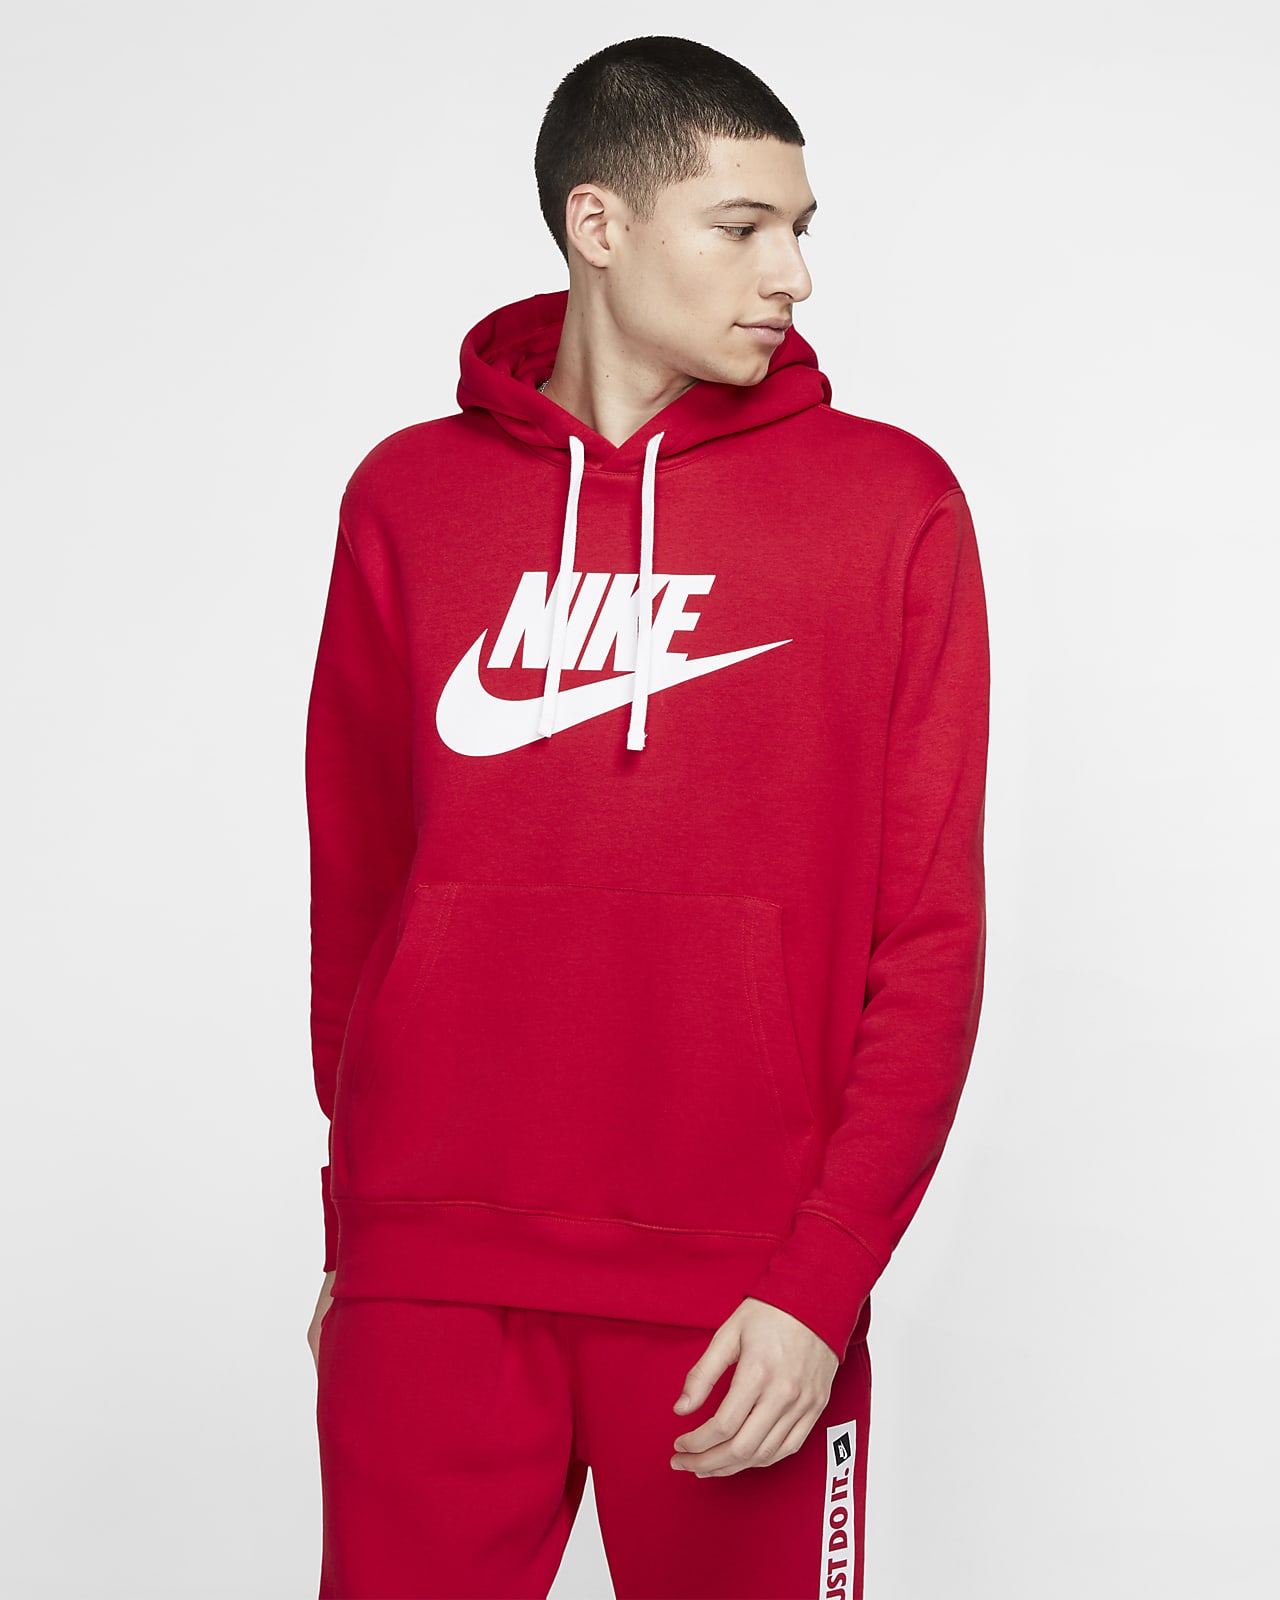 Nike Sportswear Club Fleece Men's Graphic Pullover Hoodie